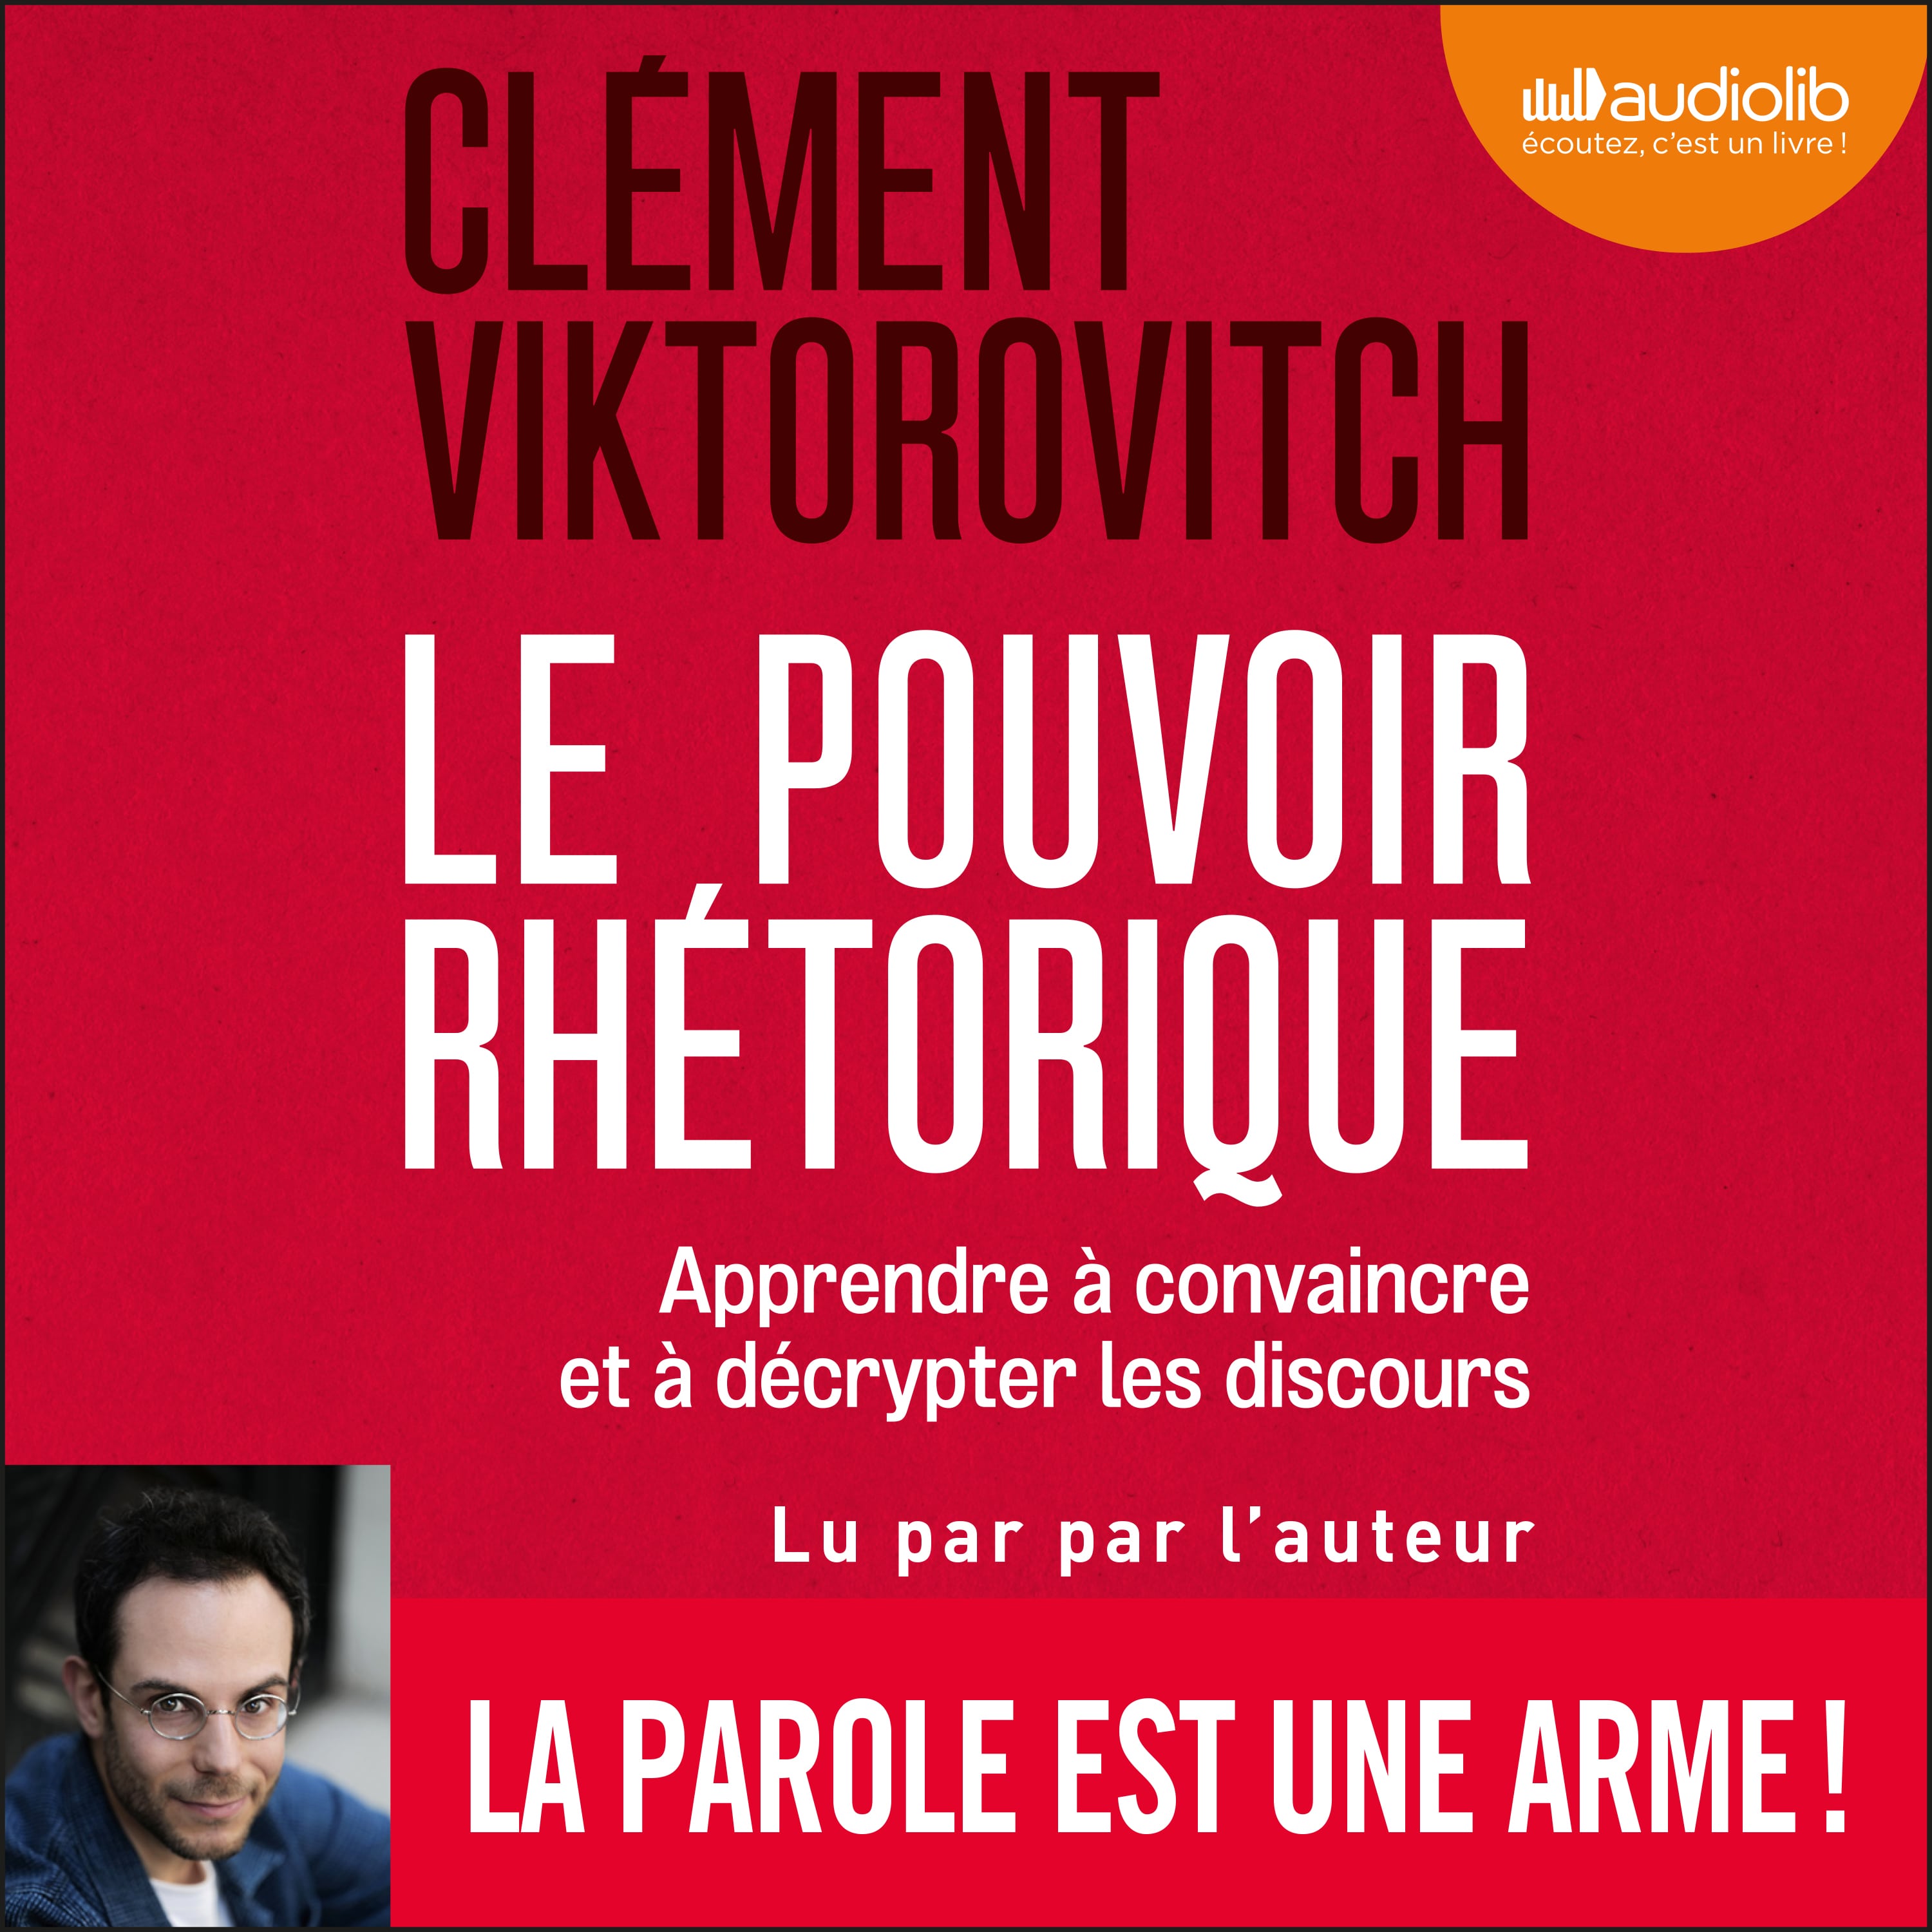 Couverture du livre audio Le pouvoir rhétorique De Clément Viktorovitch 